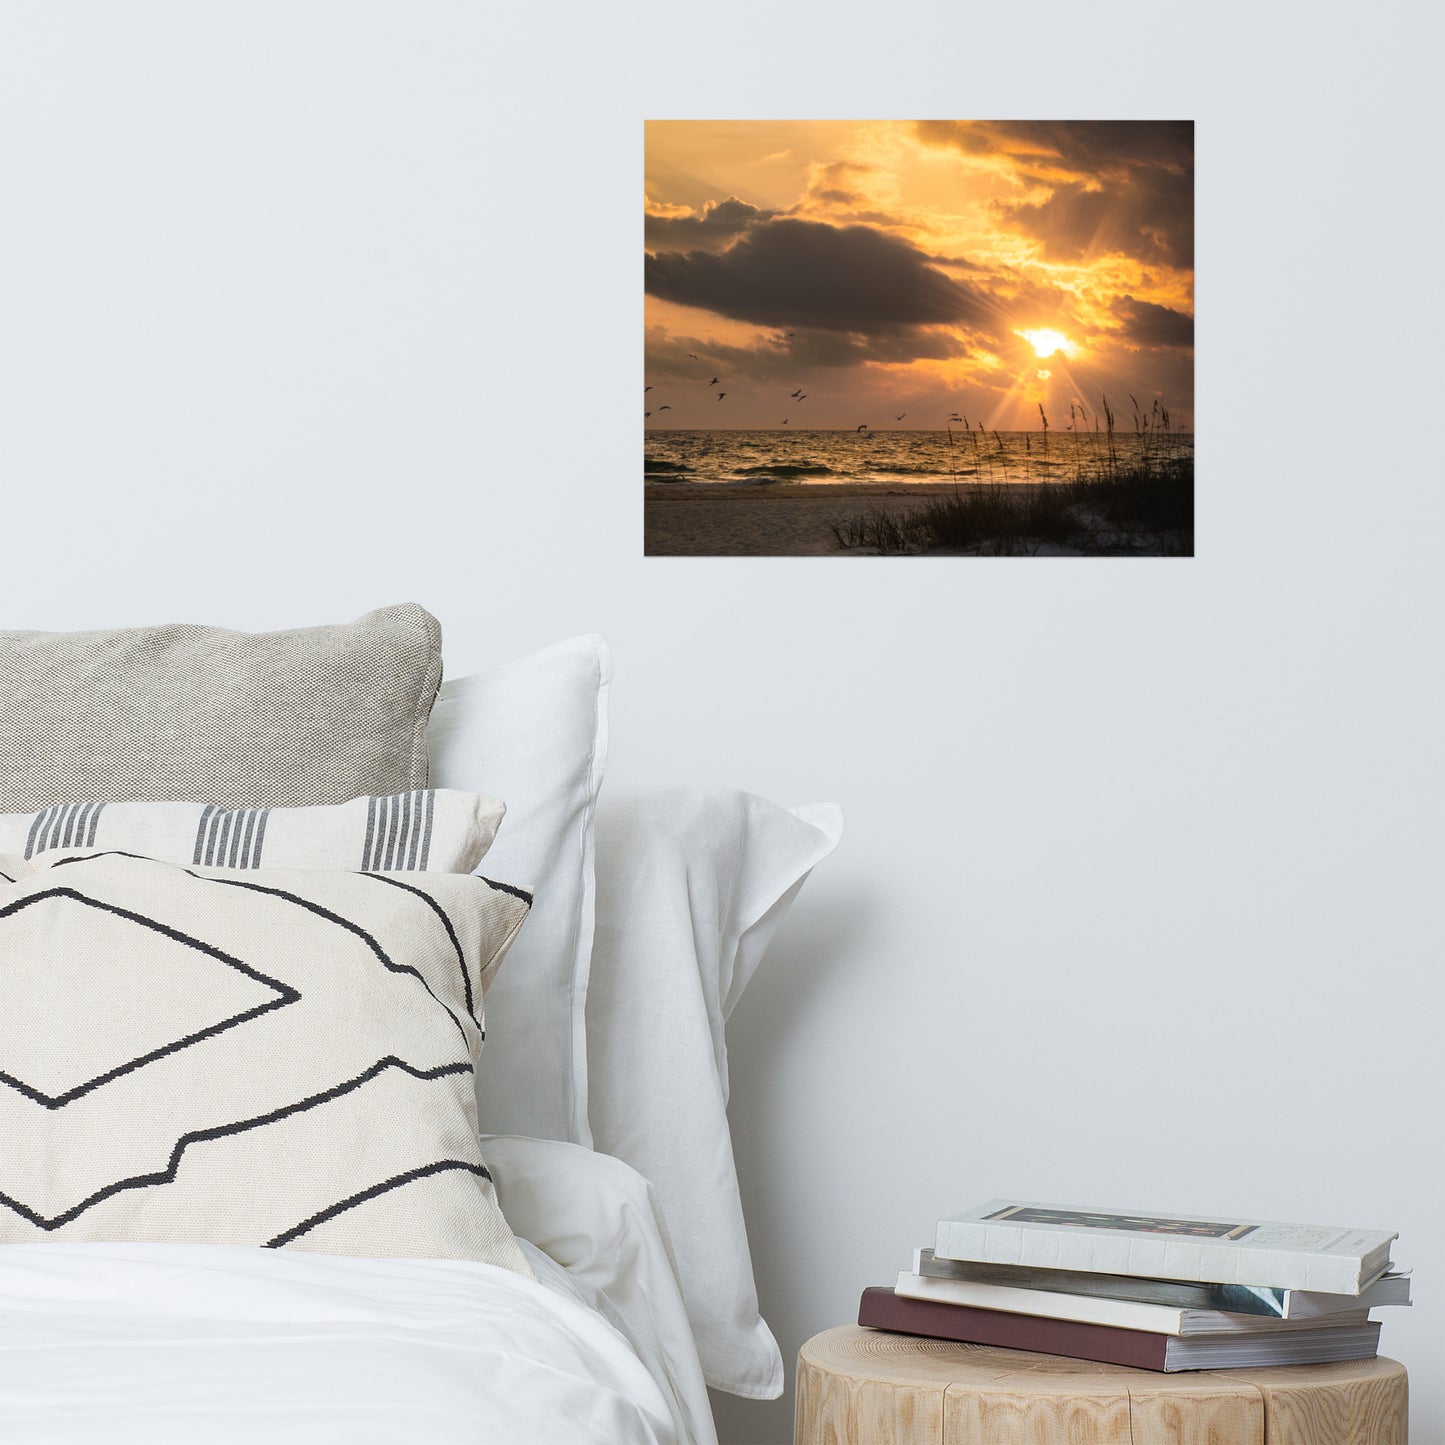 Bachelor Bedroom Art: Anna Maria Island Cloudy Golden Sunset 1 - Beach / Coastal / Seascape Nature / Landscape Photograph Loose / Unframed / Frameless / Frameable Wall Art Print - Artwork